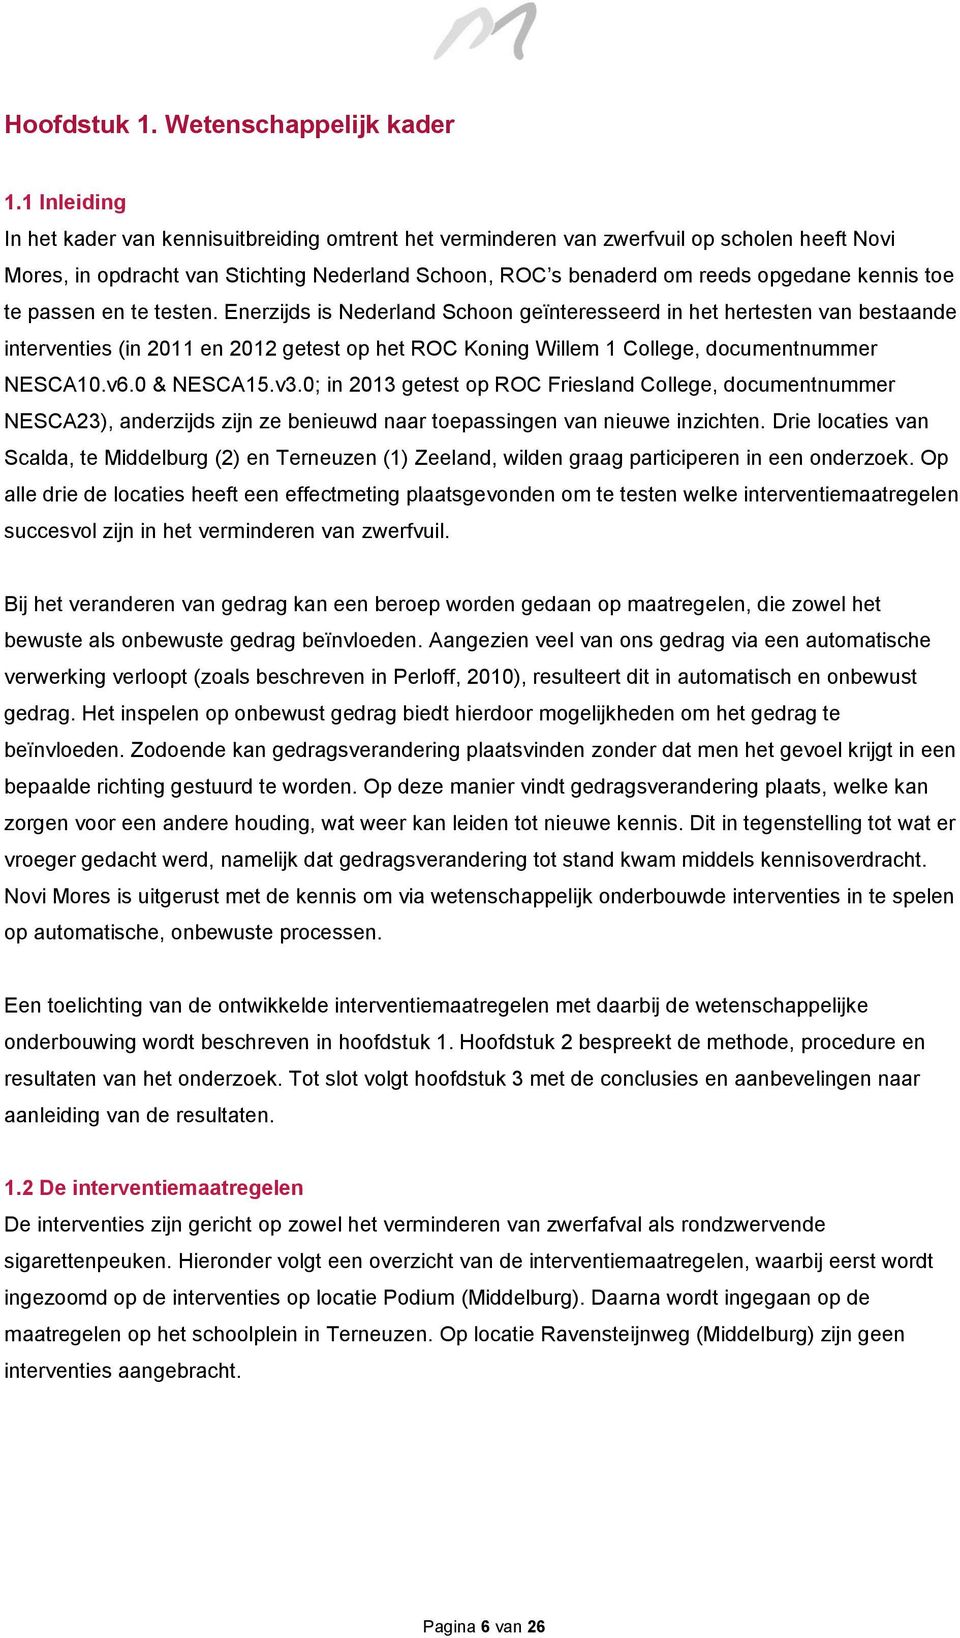 toe te passen en te testen. Enerzijds is Nederland Schoon geïnteresseerd in het hertesten van bestaande interventies (in 2011 en 2012 getest op het ROC Koning Willem 1 College, documentnummer NESCA10.